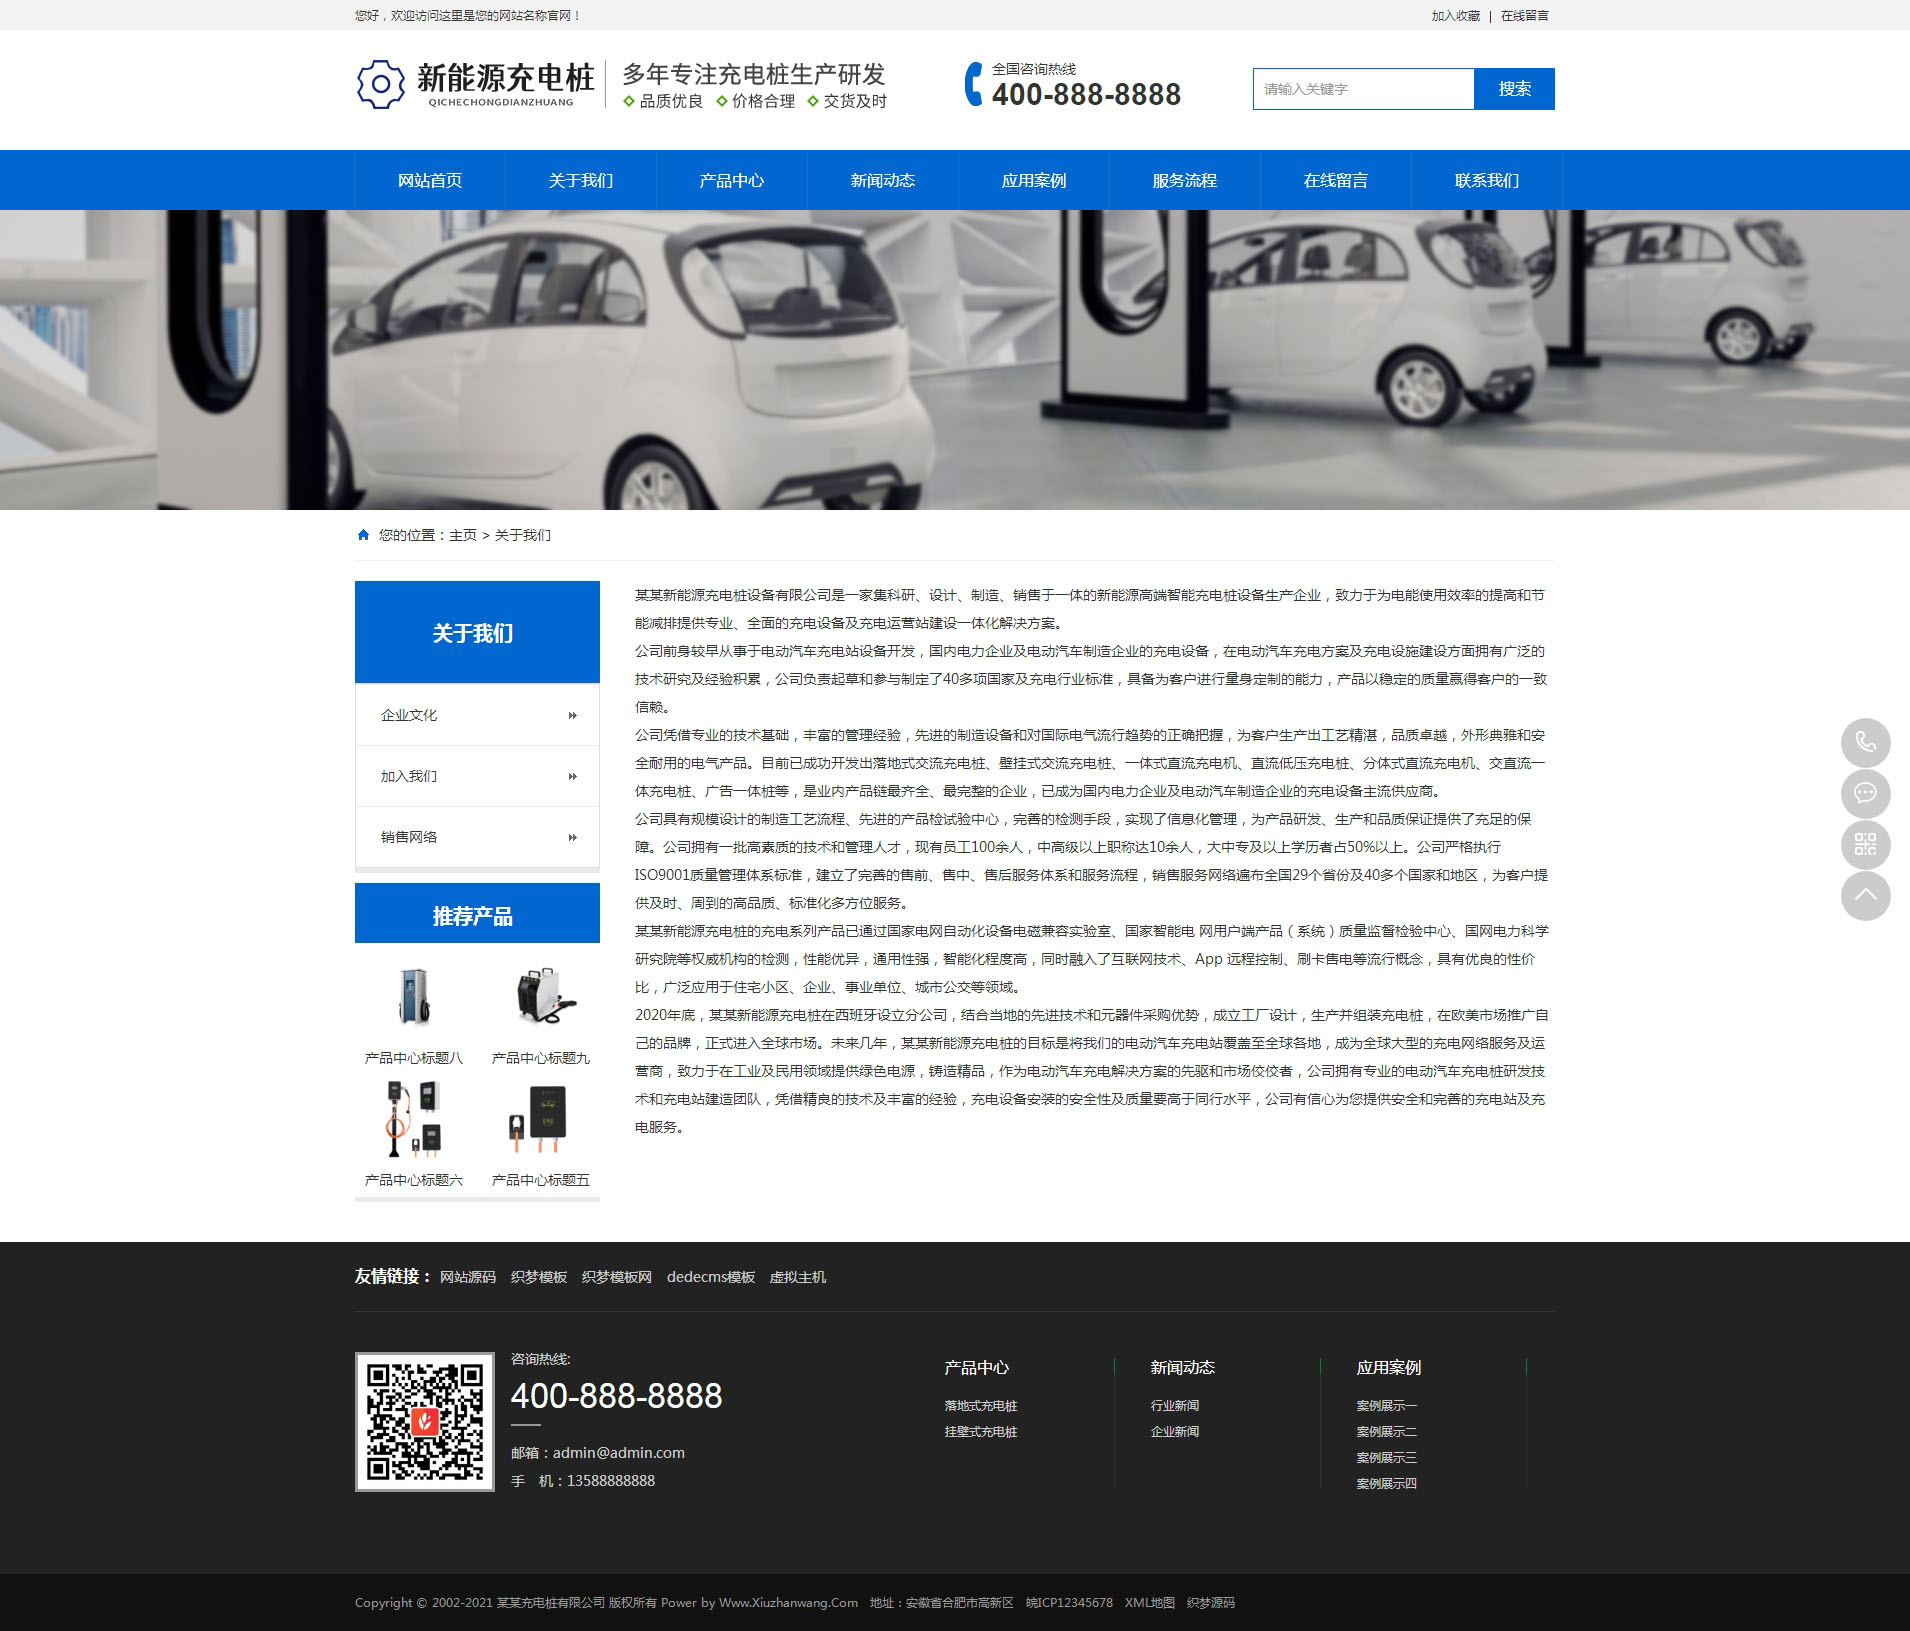 新能源汽车充电桩产品展示网站(带手机端)